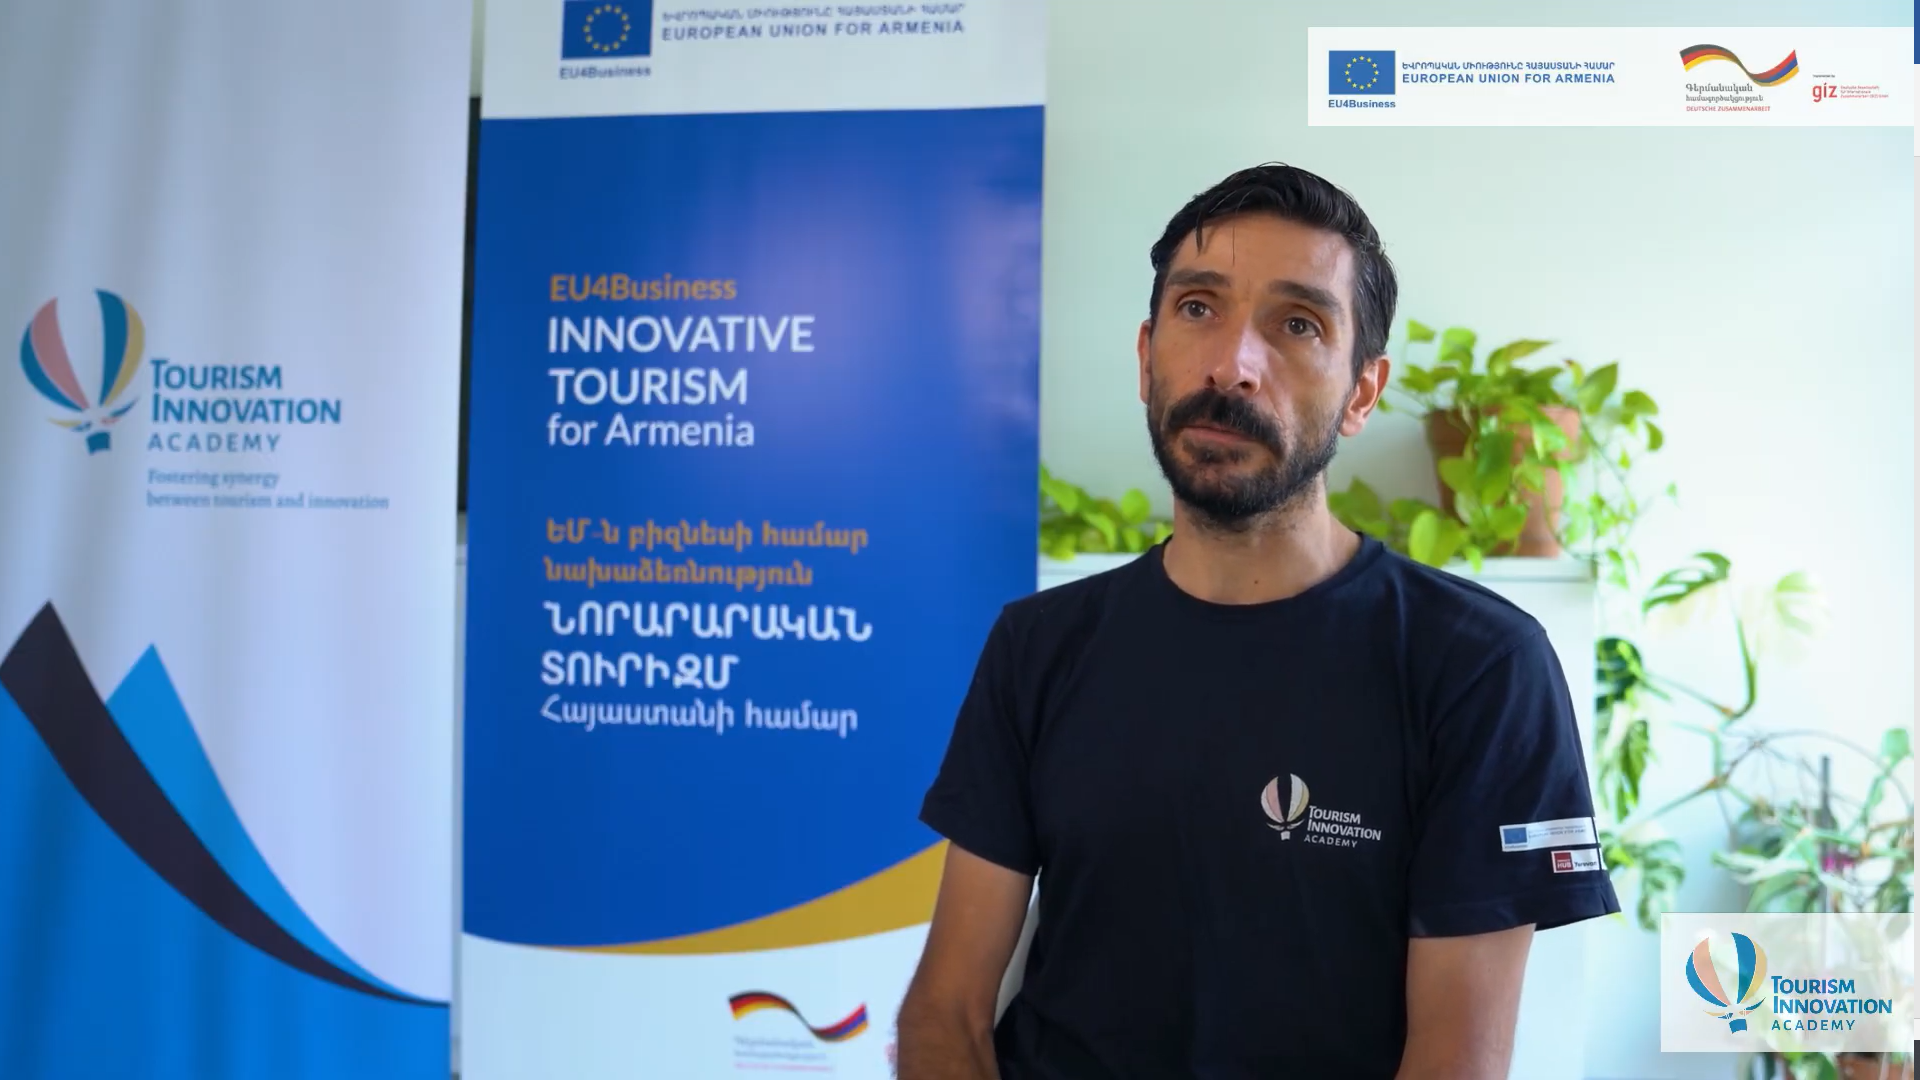 Standbild aus dem Video über die Förderung touristischer Unternehmen und Start-ups in Armenien